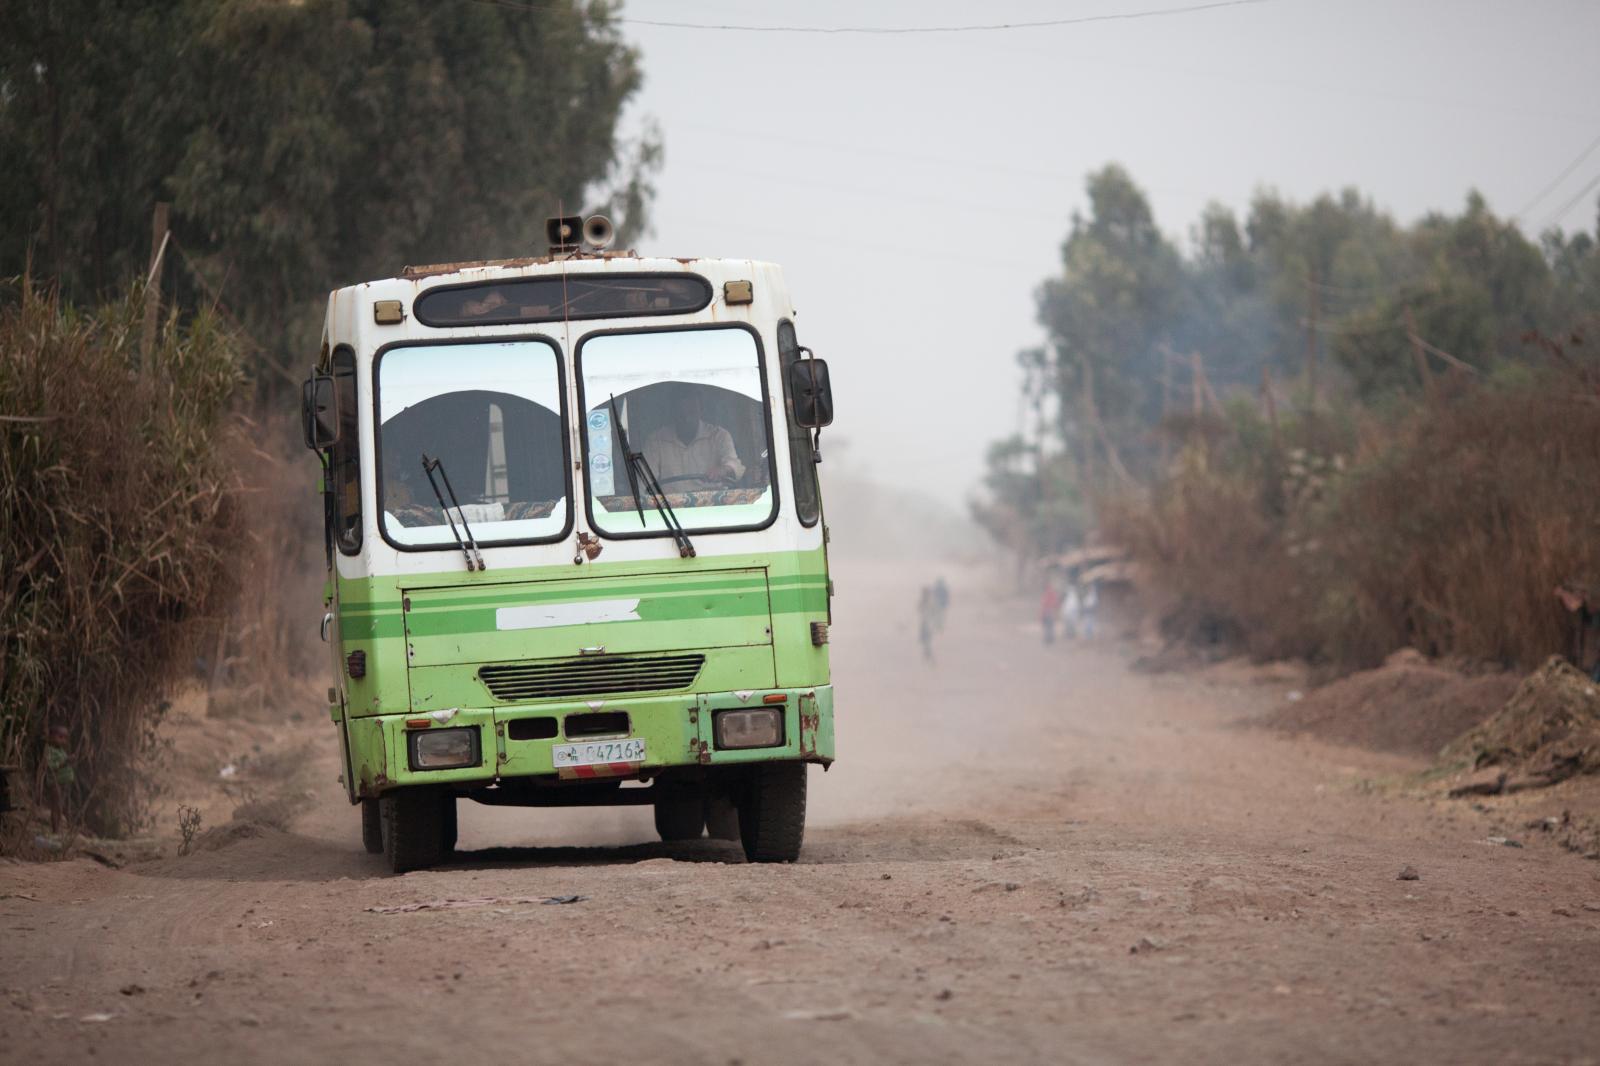 Transportation in Ethiopia